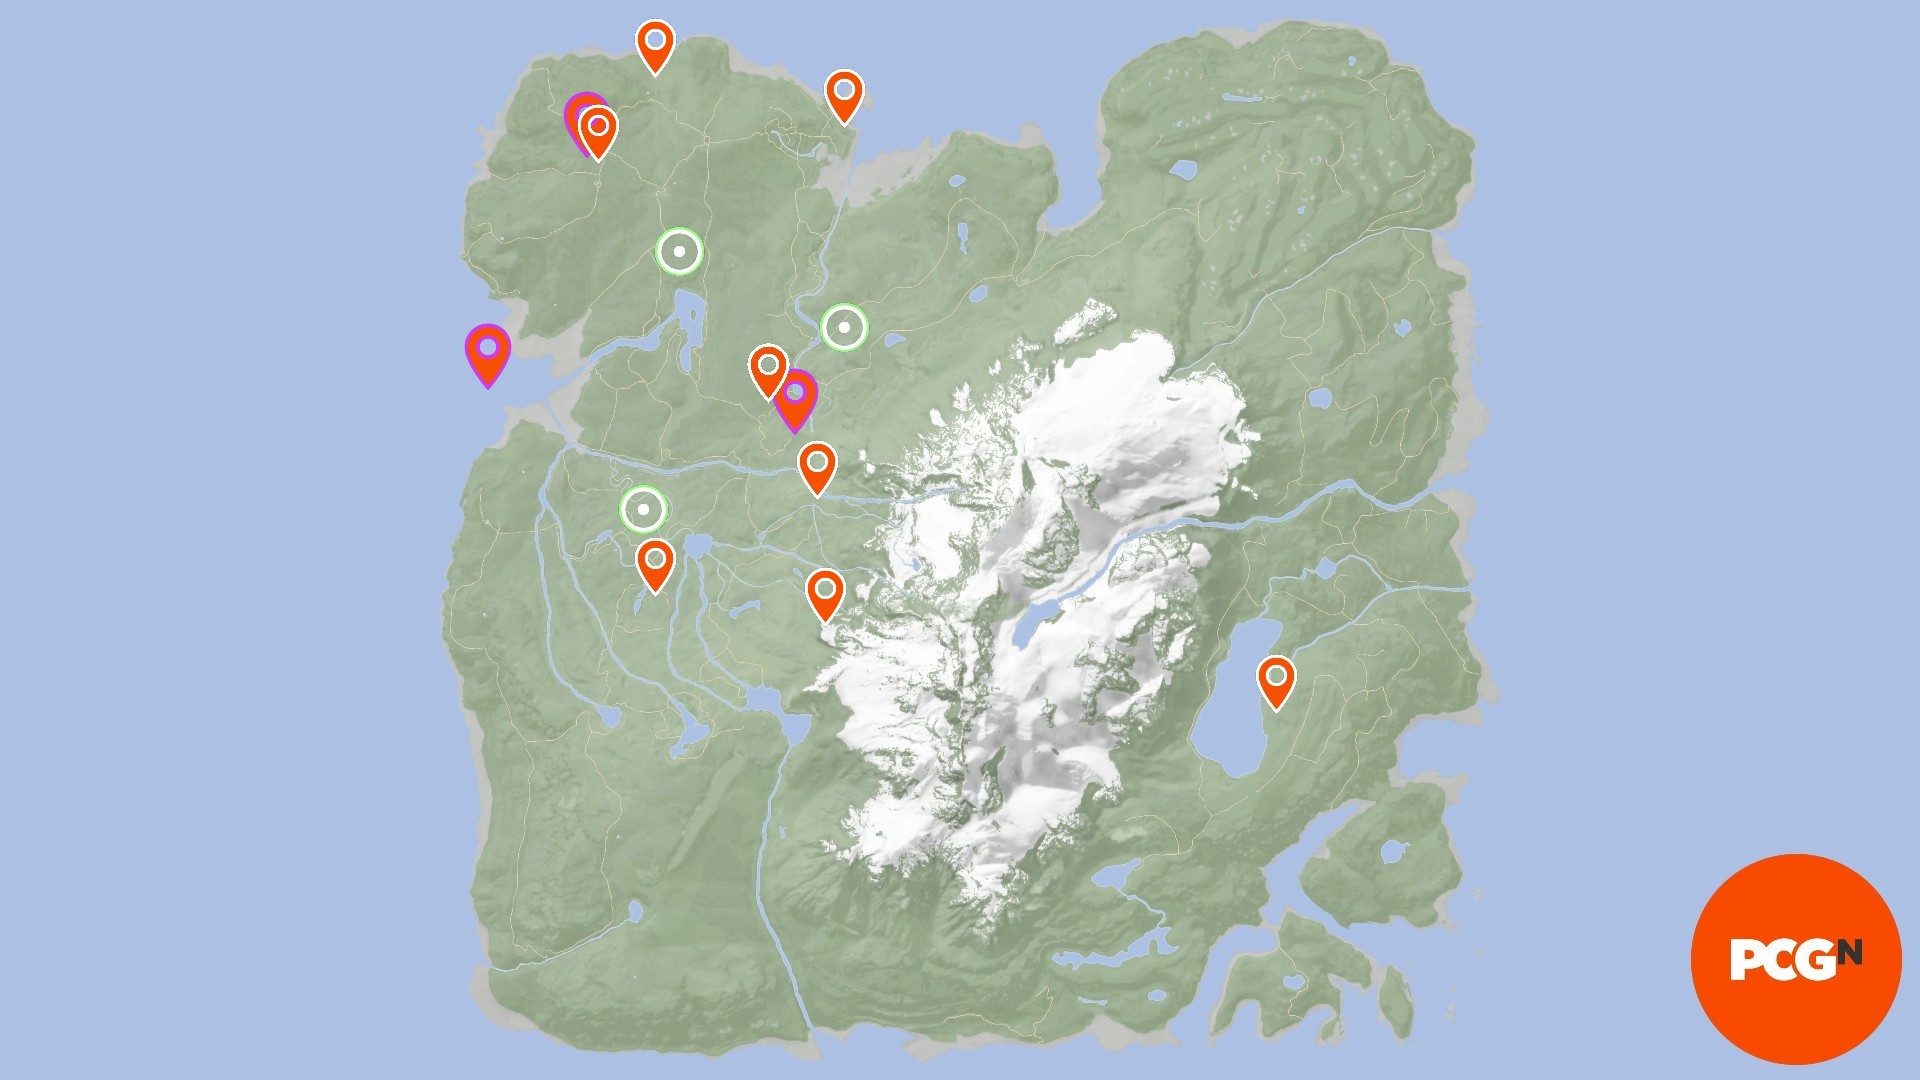 Synowie mapy leśnej: różne lokalizacje przedmiotów są oznaczone na mapie z różnymi ikonami narzędzi, lokalizatorów GPS i POI